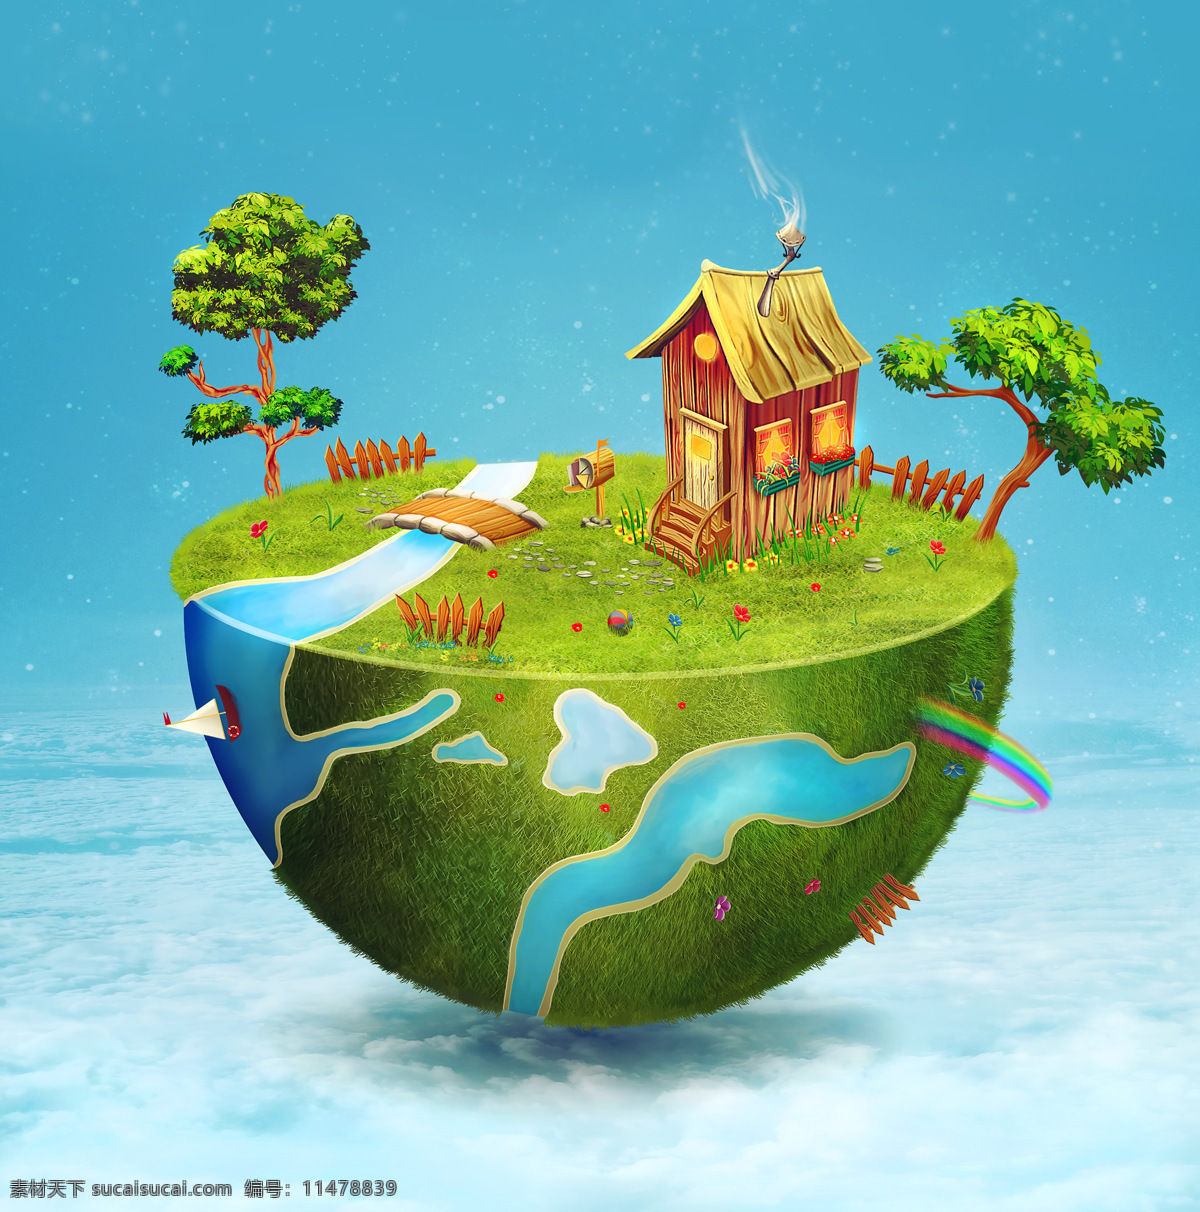 半个立体地球 地球上的房屋 缤纷多彩地球 绚丽地球 绿色家园 地球 立体地球 动漫王国 卡通漫画 卡通地球 生态环境 卡通动漫 动漫动画